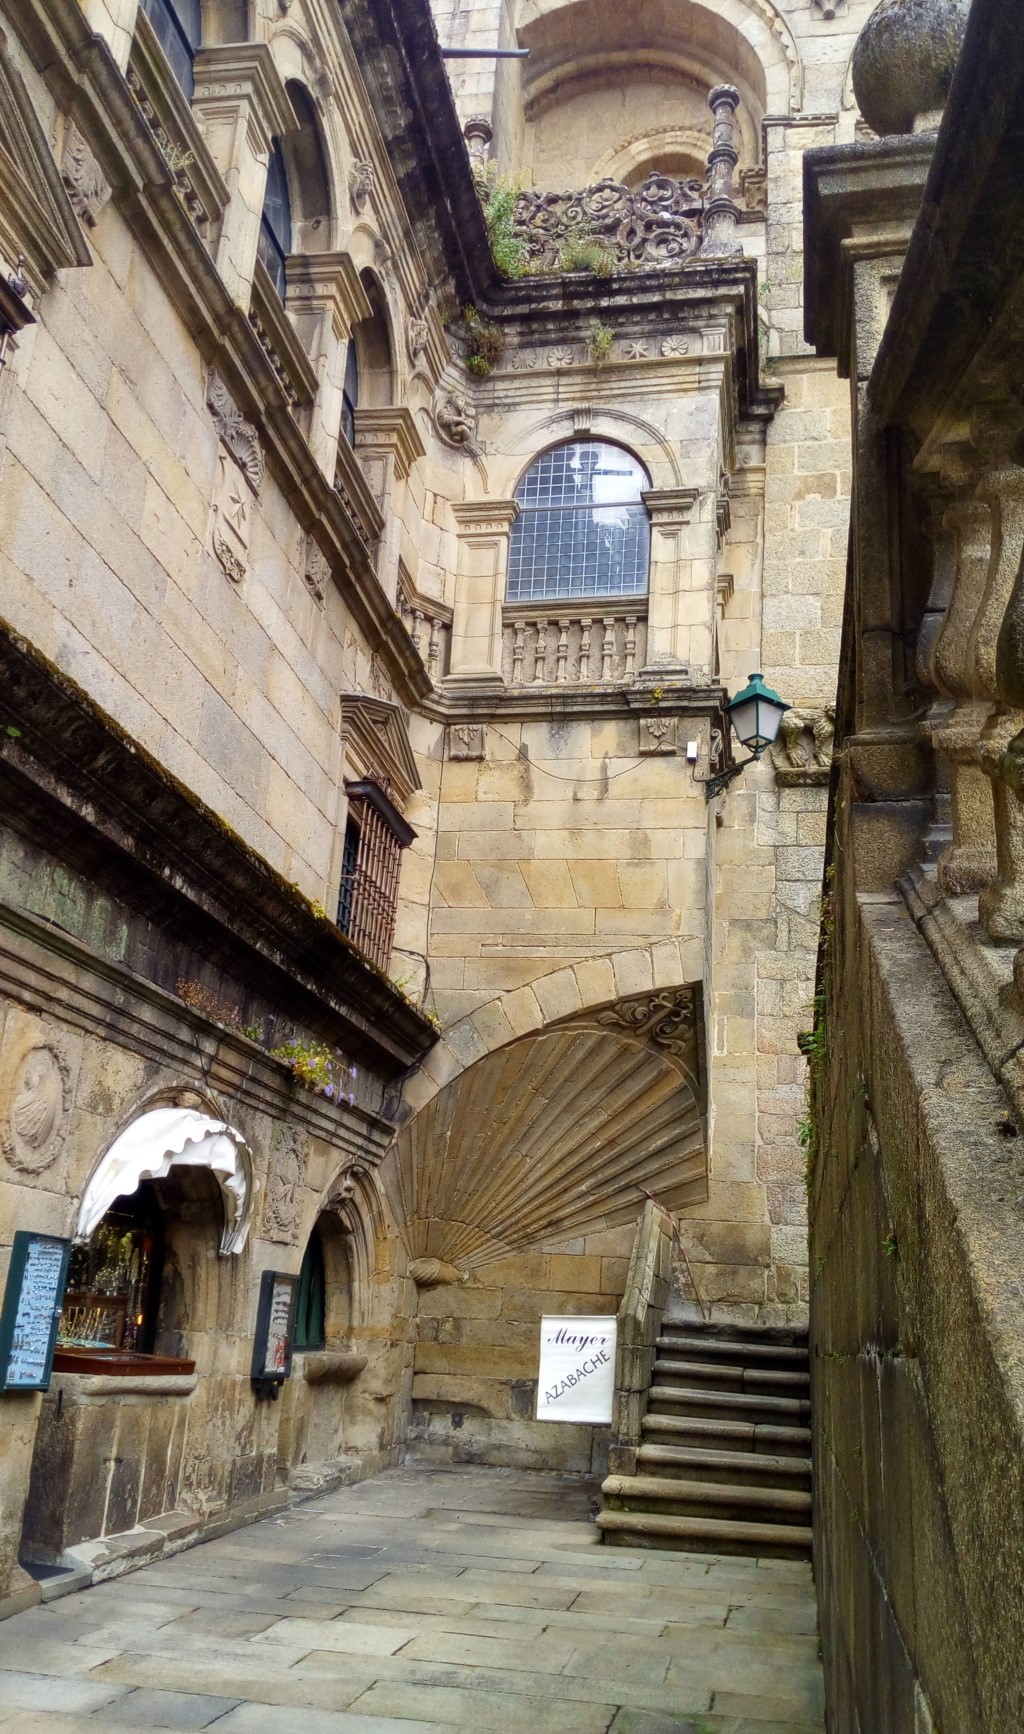 Rincon entre el muro del claustro y la fachada de la Catedral